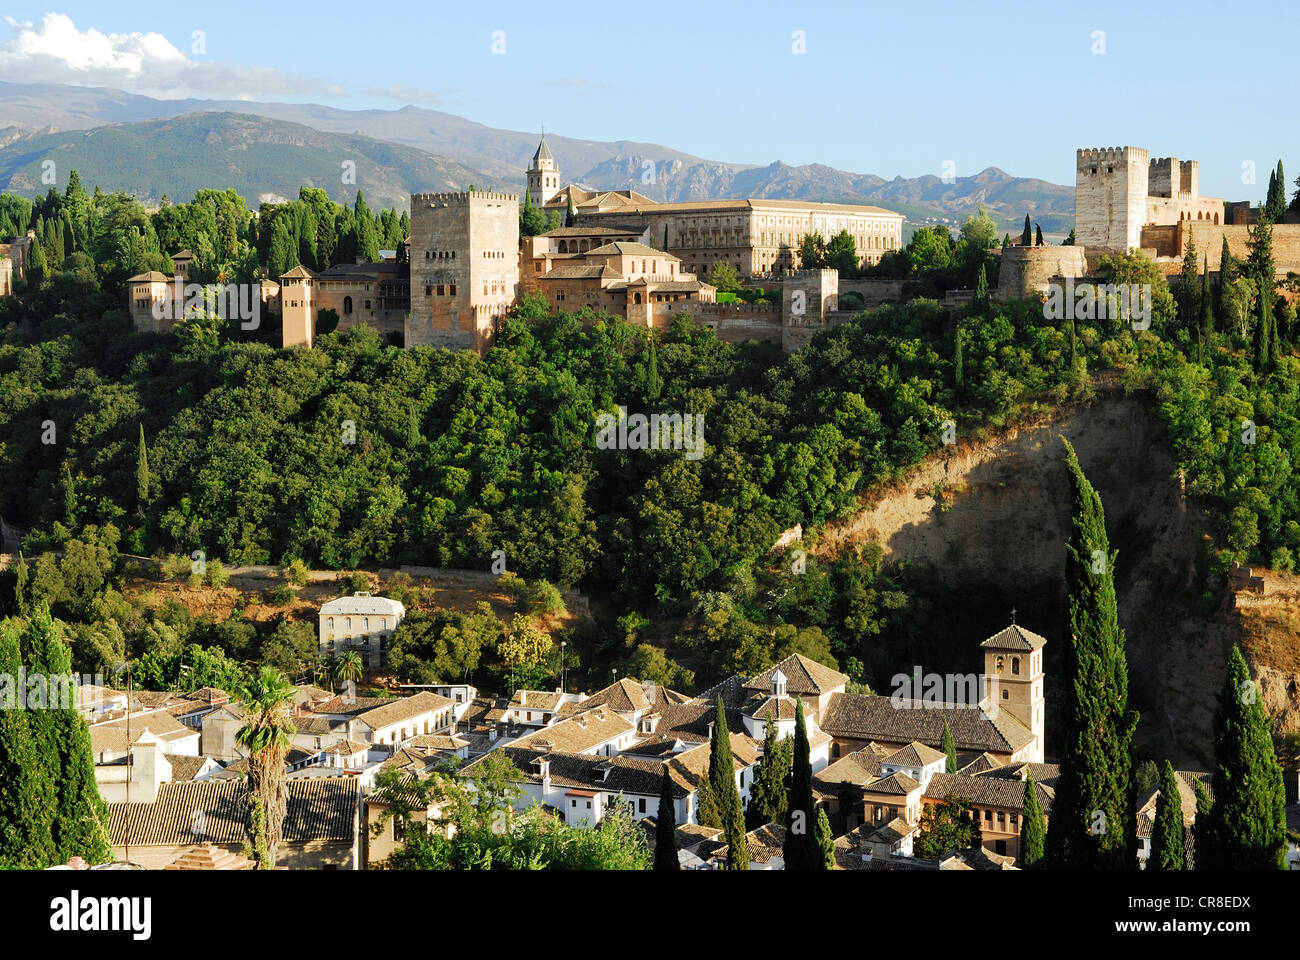 Spagna, Andalusia, Granada, il Palazzo Alhambra e il palazzo di Carlo V, patrimonio mondiale dell UNESCO, vista da San Nicolas Foto Stock